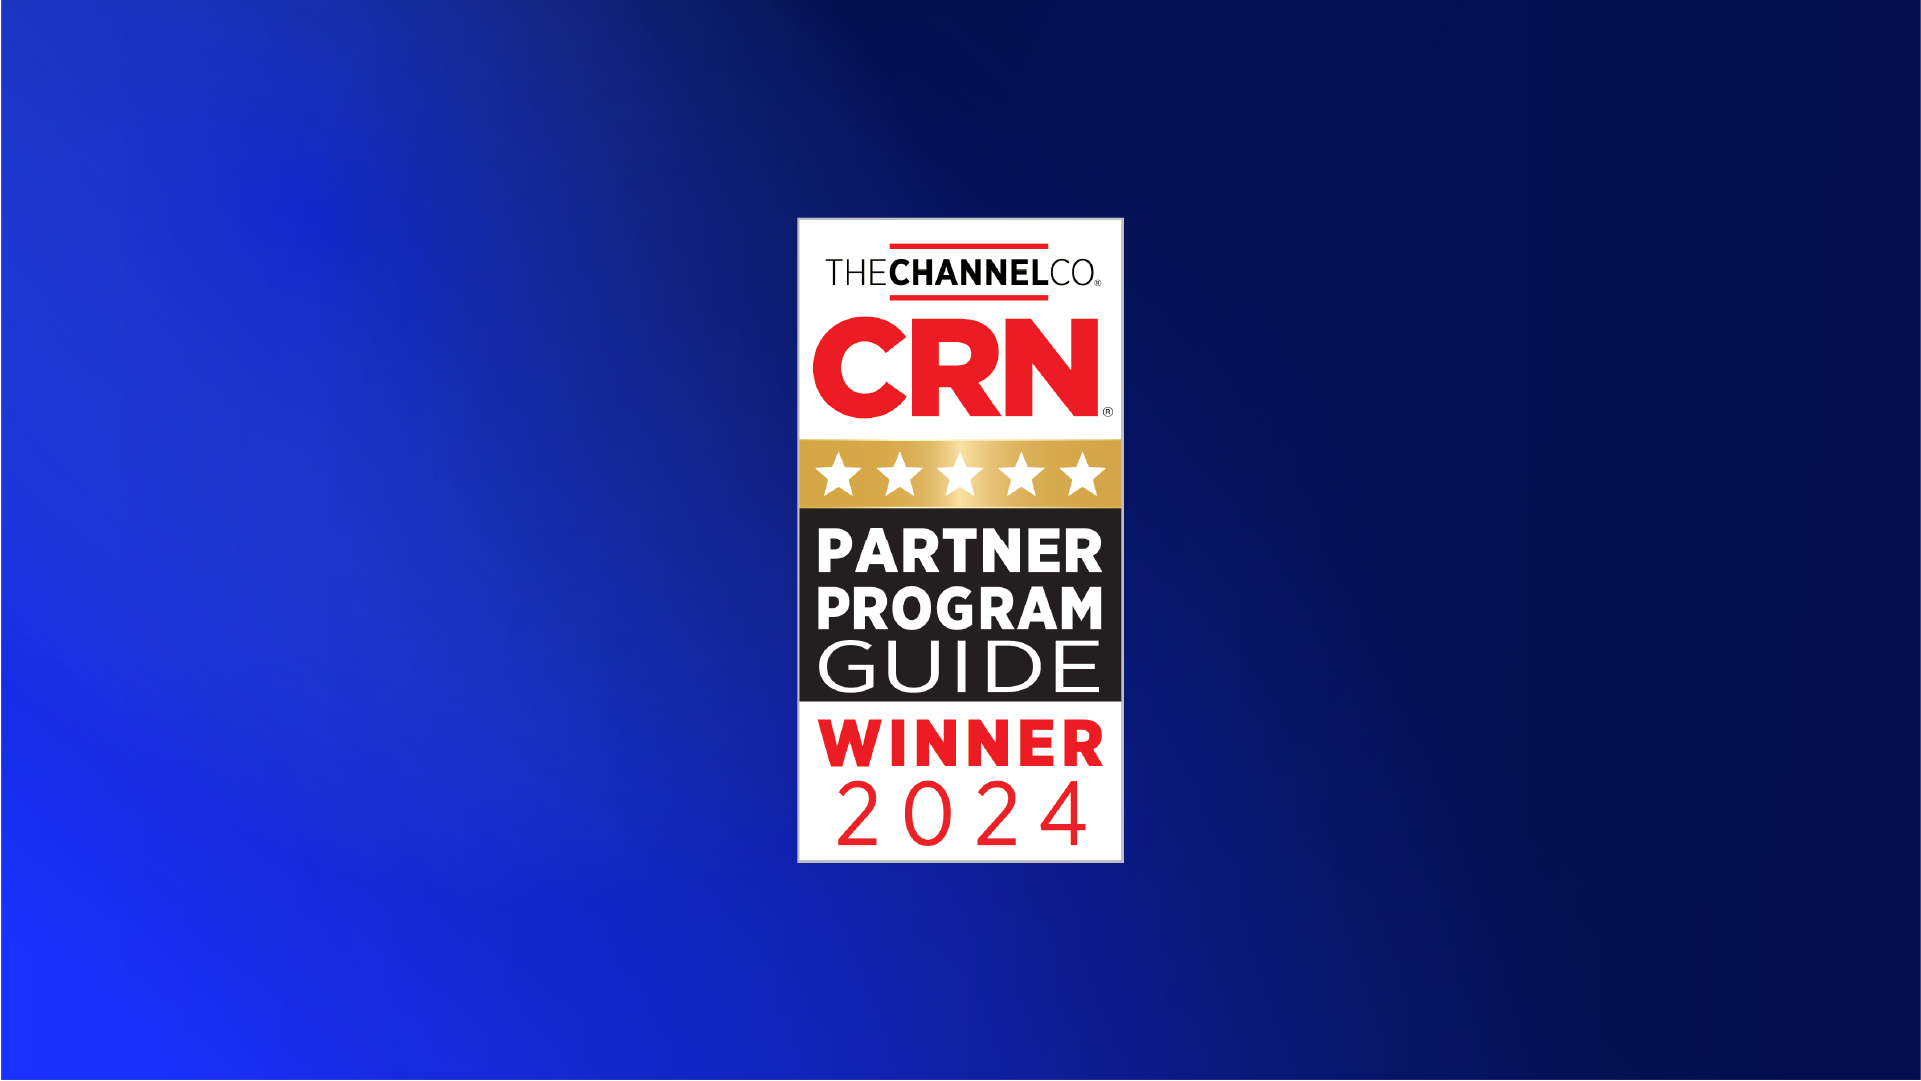 CRN Partner Program Guide Winner